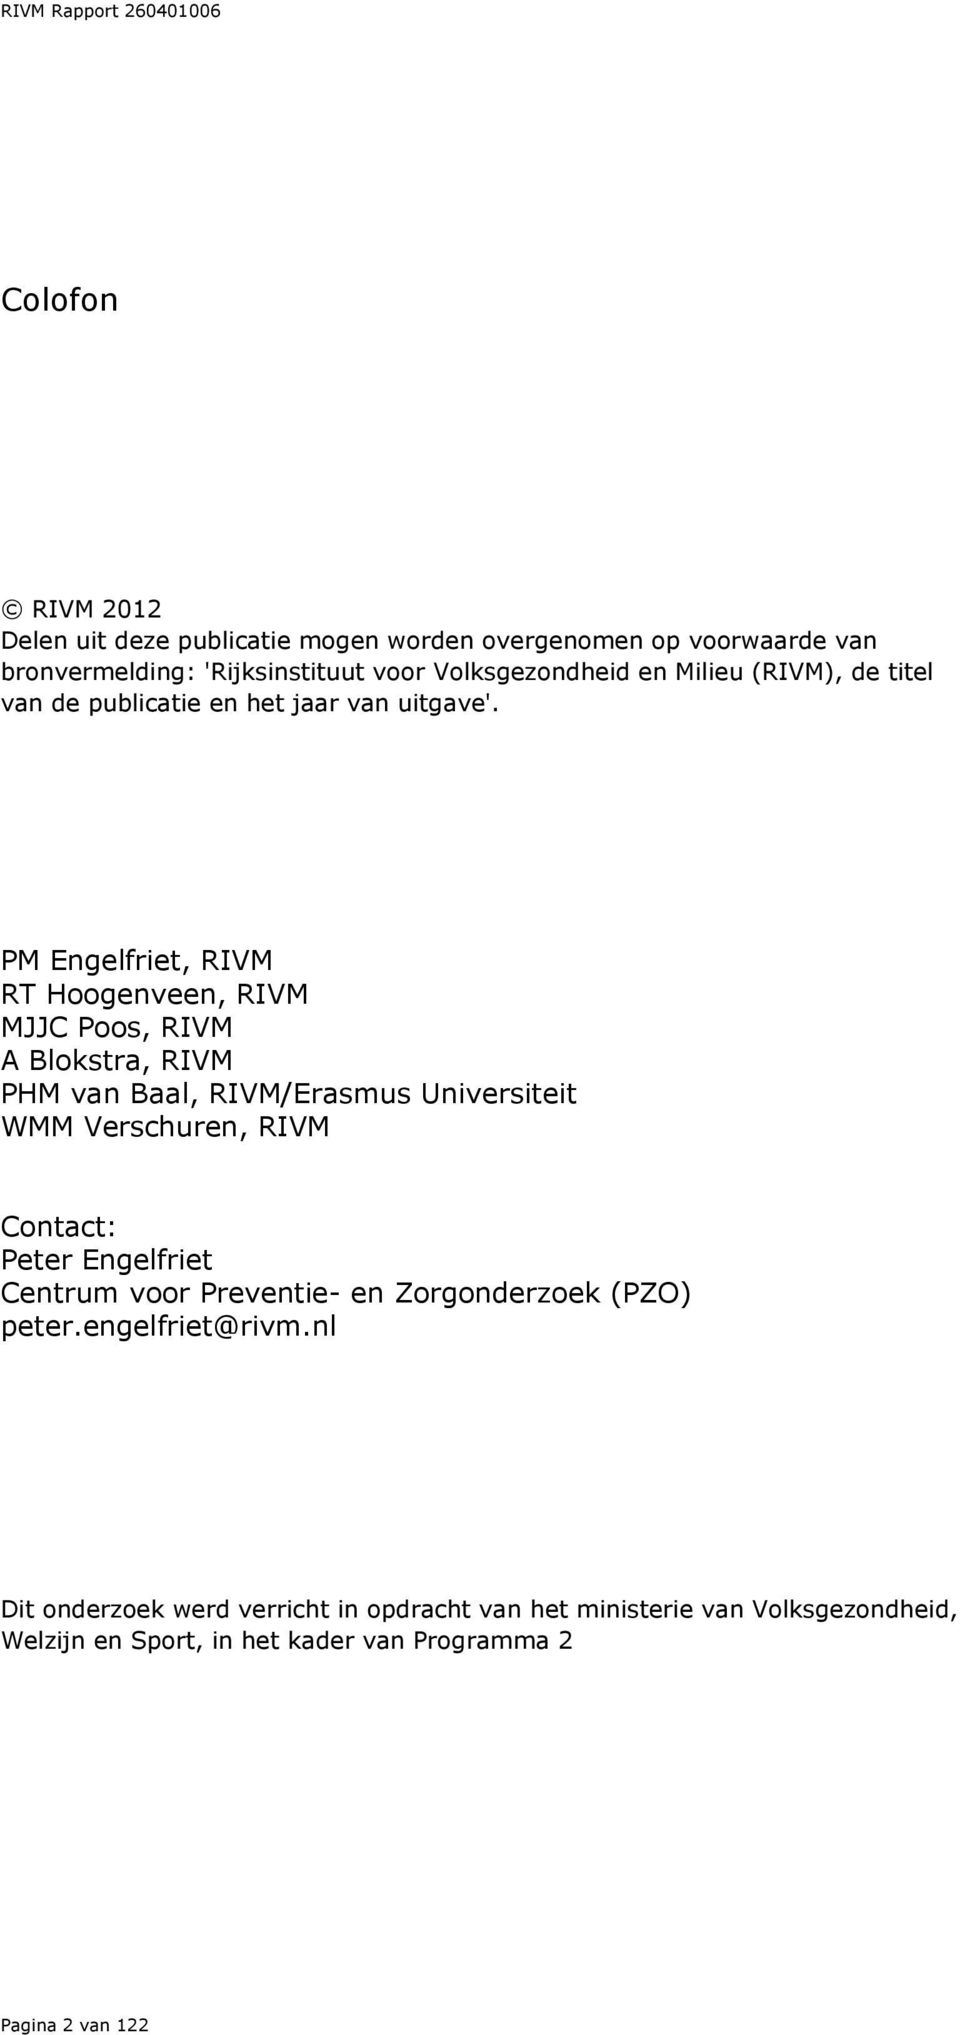 PM Engelfriet, RIVM RT Hoogenveen, RIVM MJJC Poos, RIVM A Blokstra, RIVM PHM van Baal, RIVM/Erasmus Universiteit WMM Verschuren, RIVM Contact: